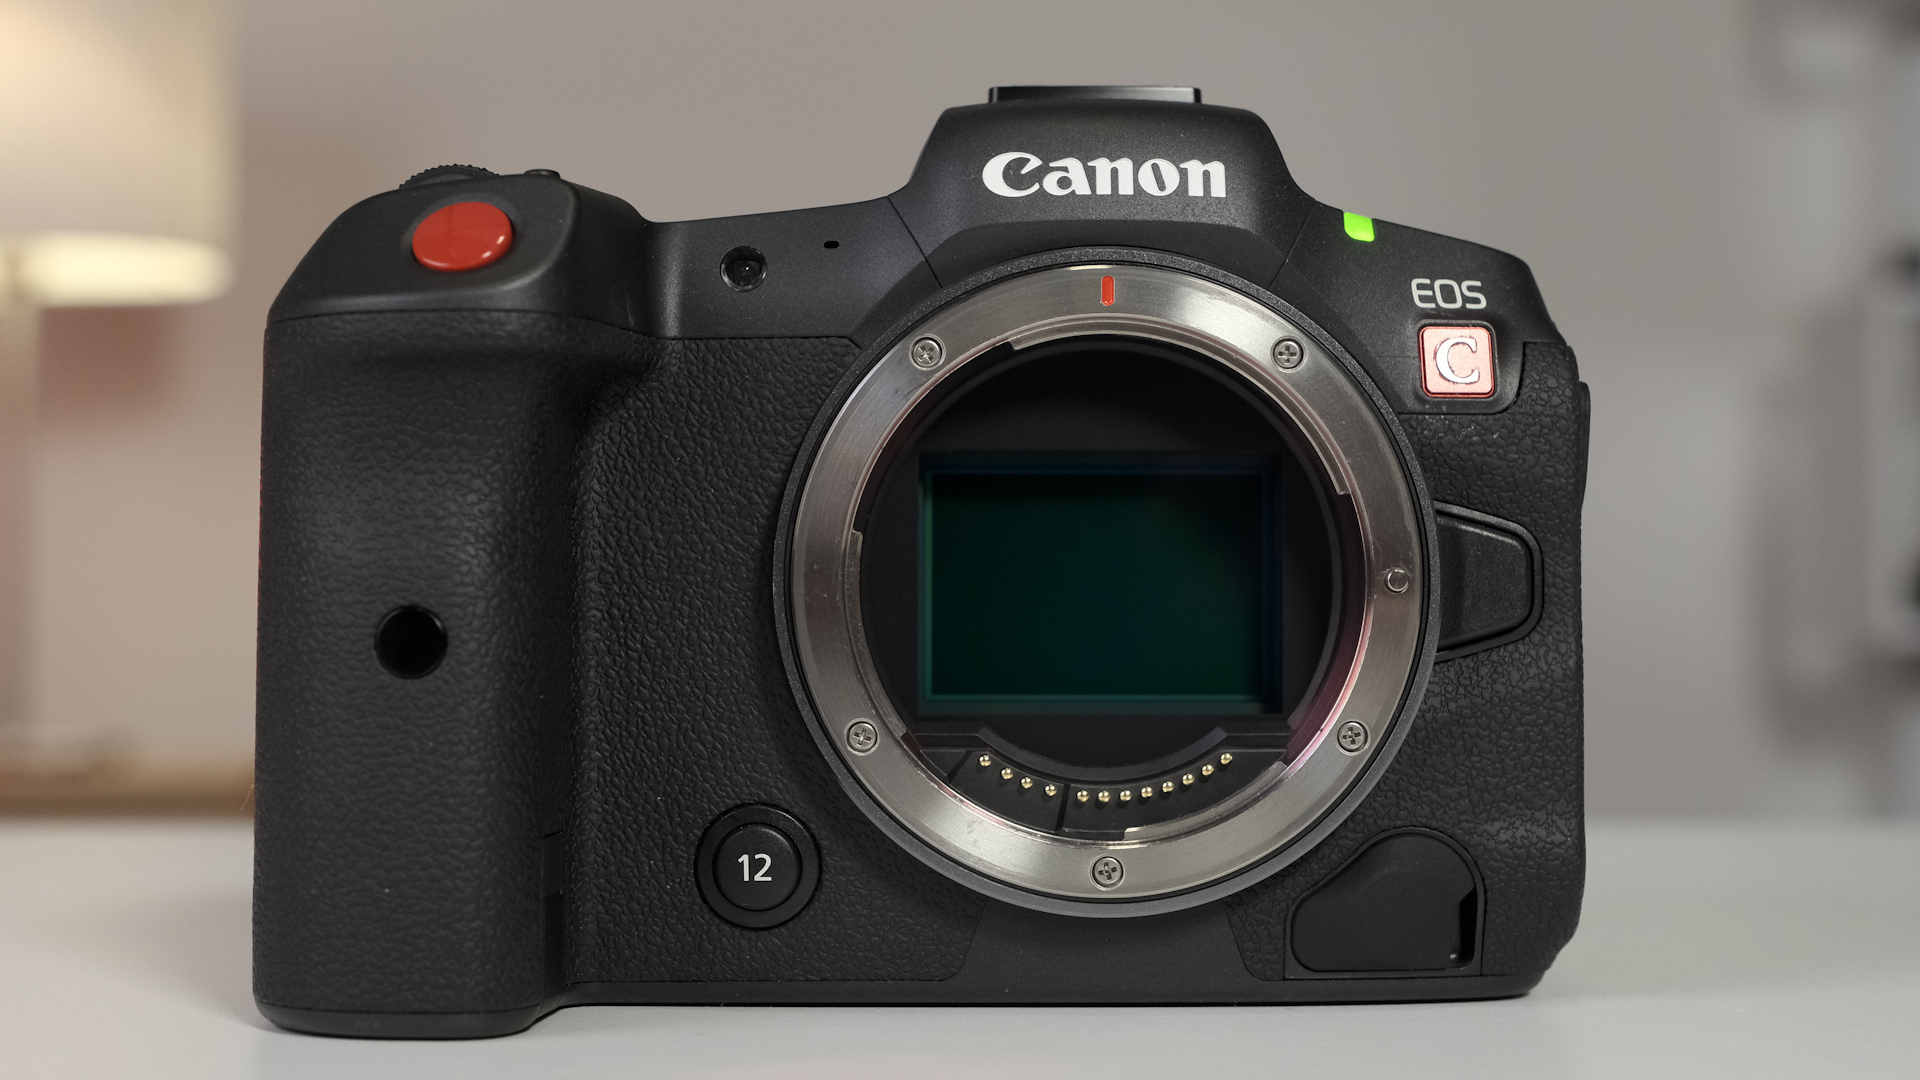 The R5 vs. R5 C vs. C70: Comparing Canon's (Very) Similar Cameras